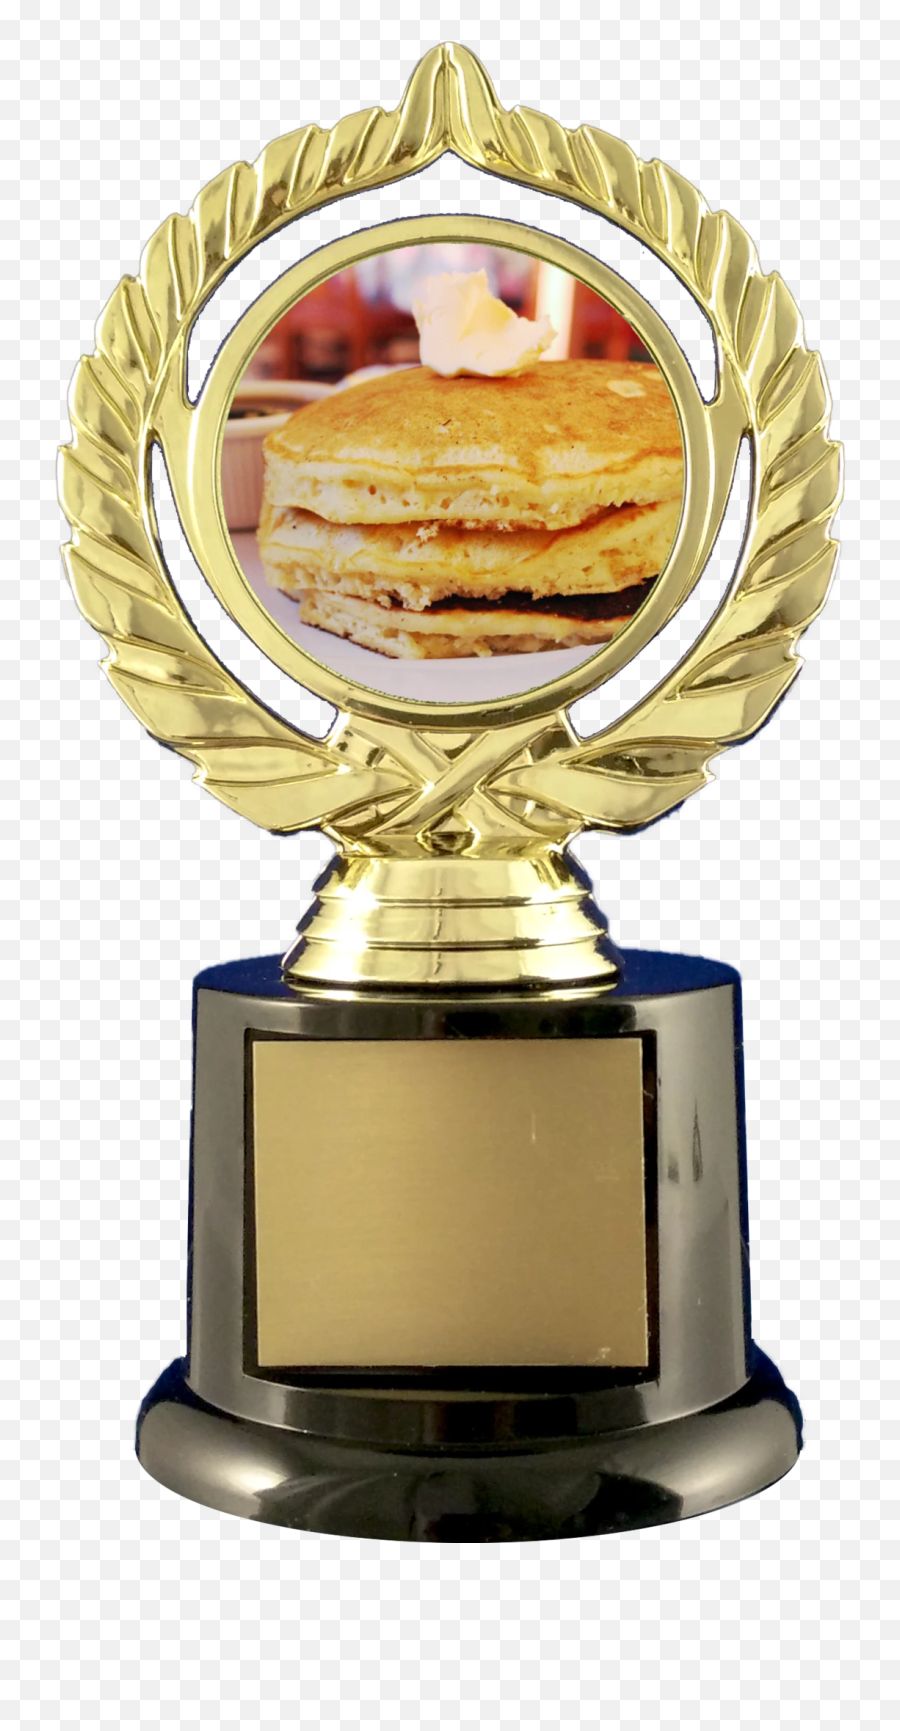 Pancake Trophy On Black Round Base - Pancake Trophy Emoji,Trophy Cake Emoji